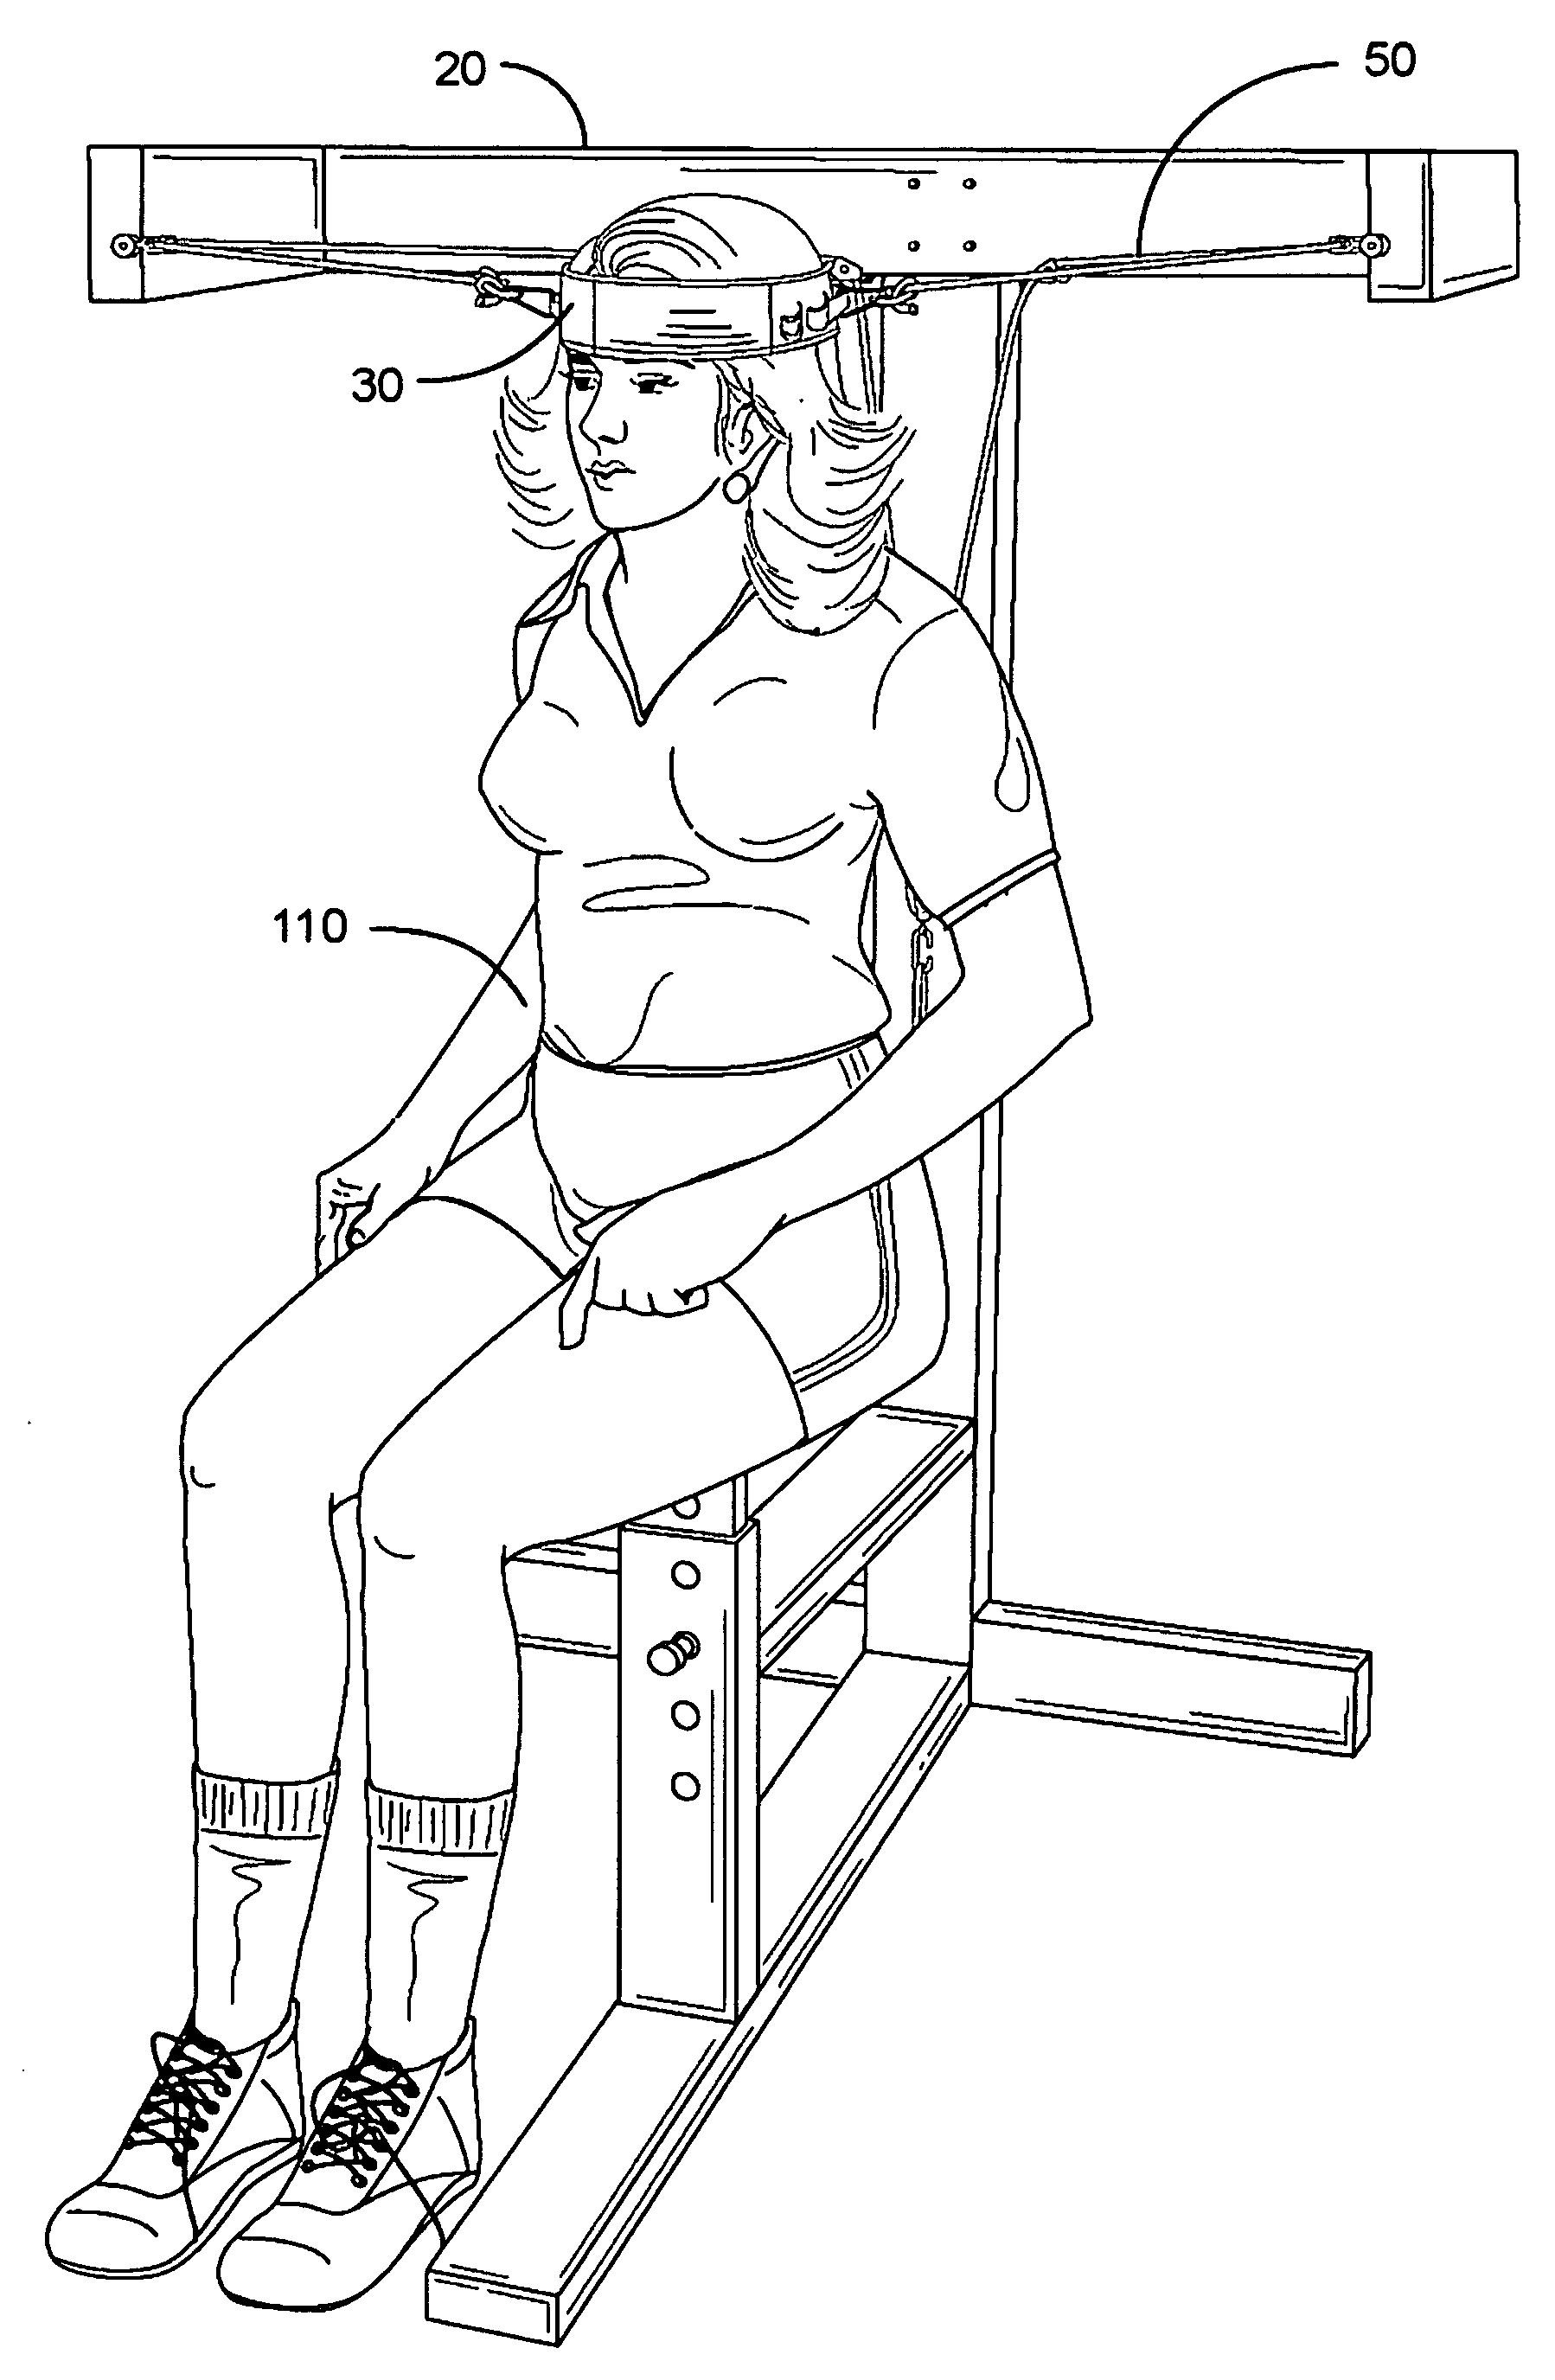 Neck exercise machine